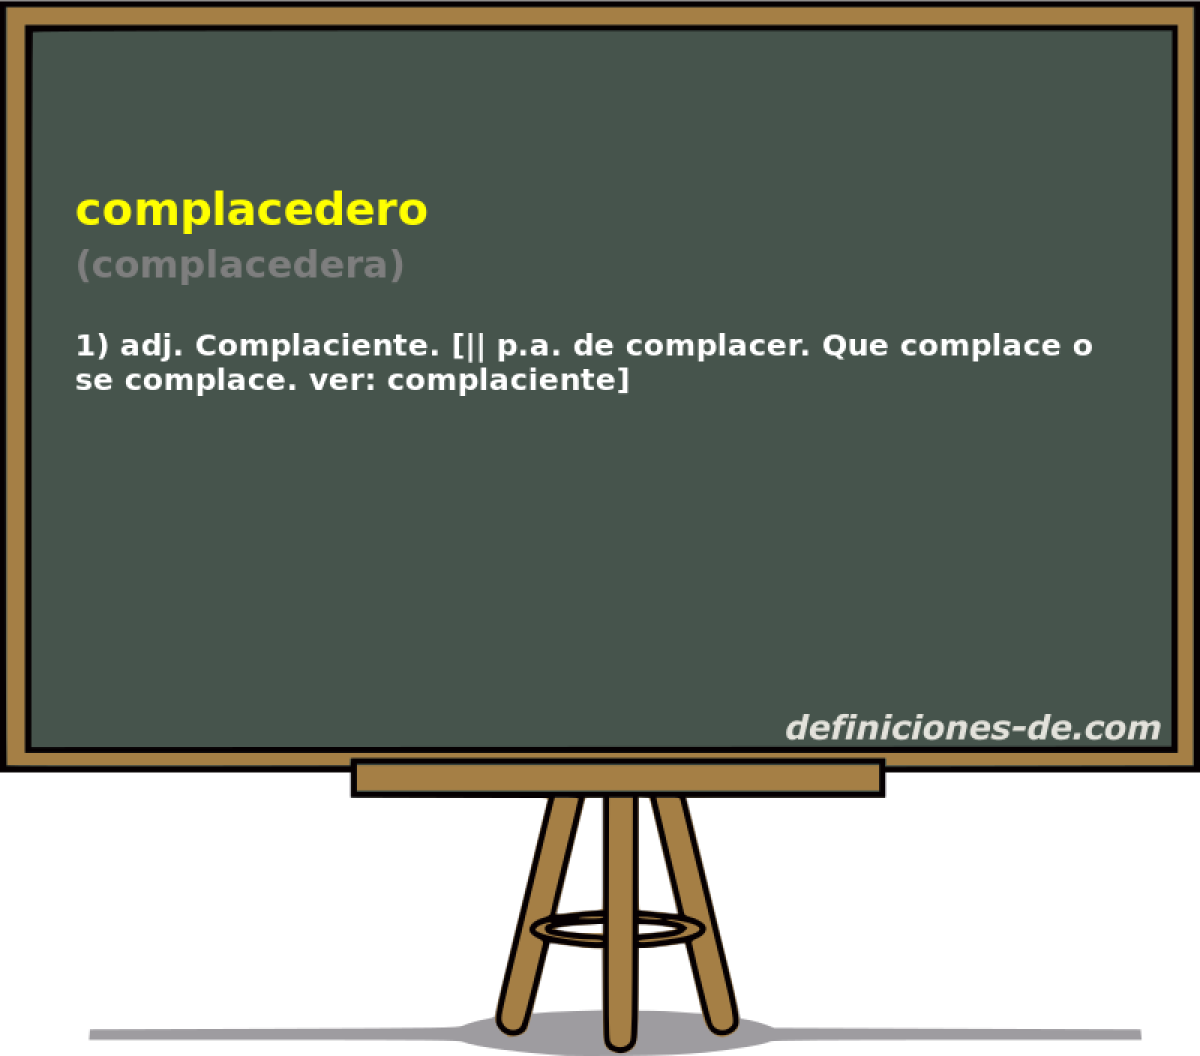 complacedero (complacedera)